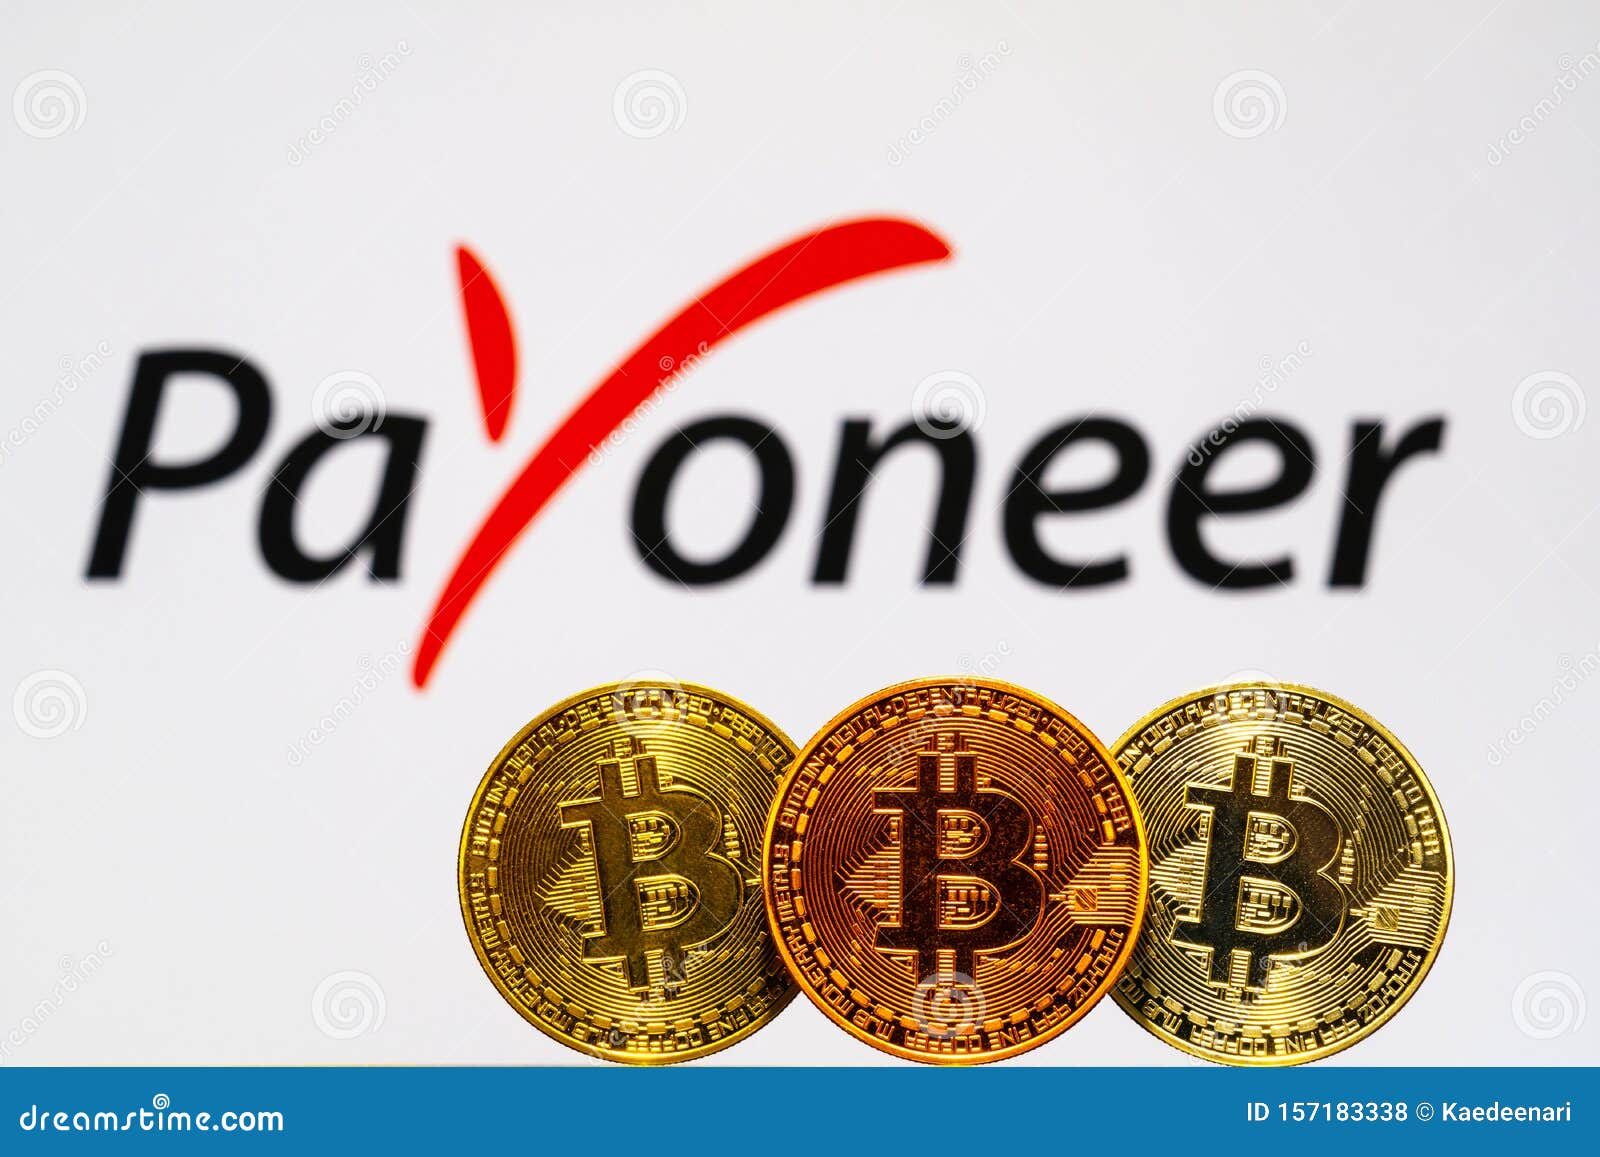 bitcoin a payoneer